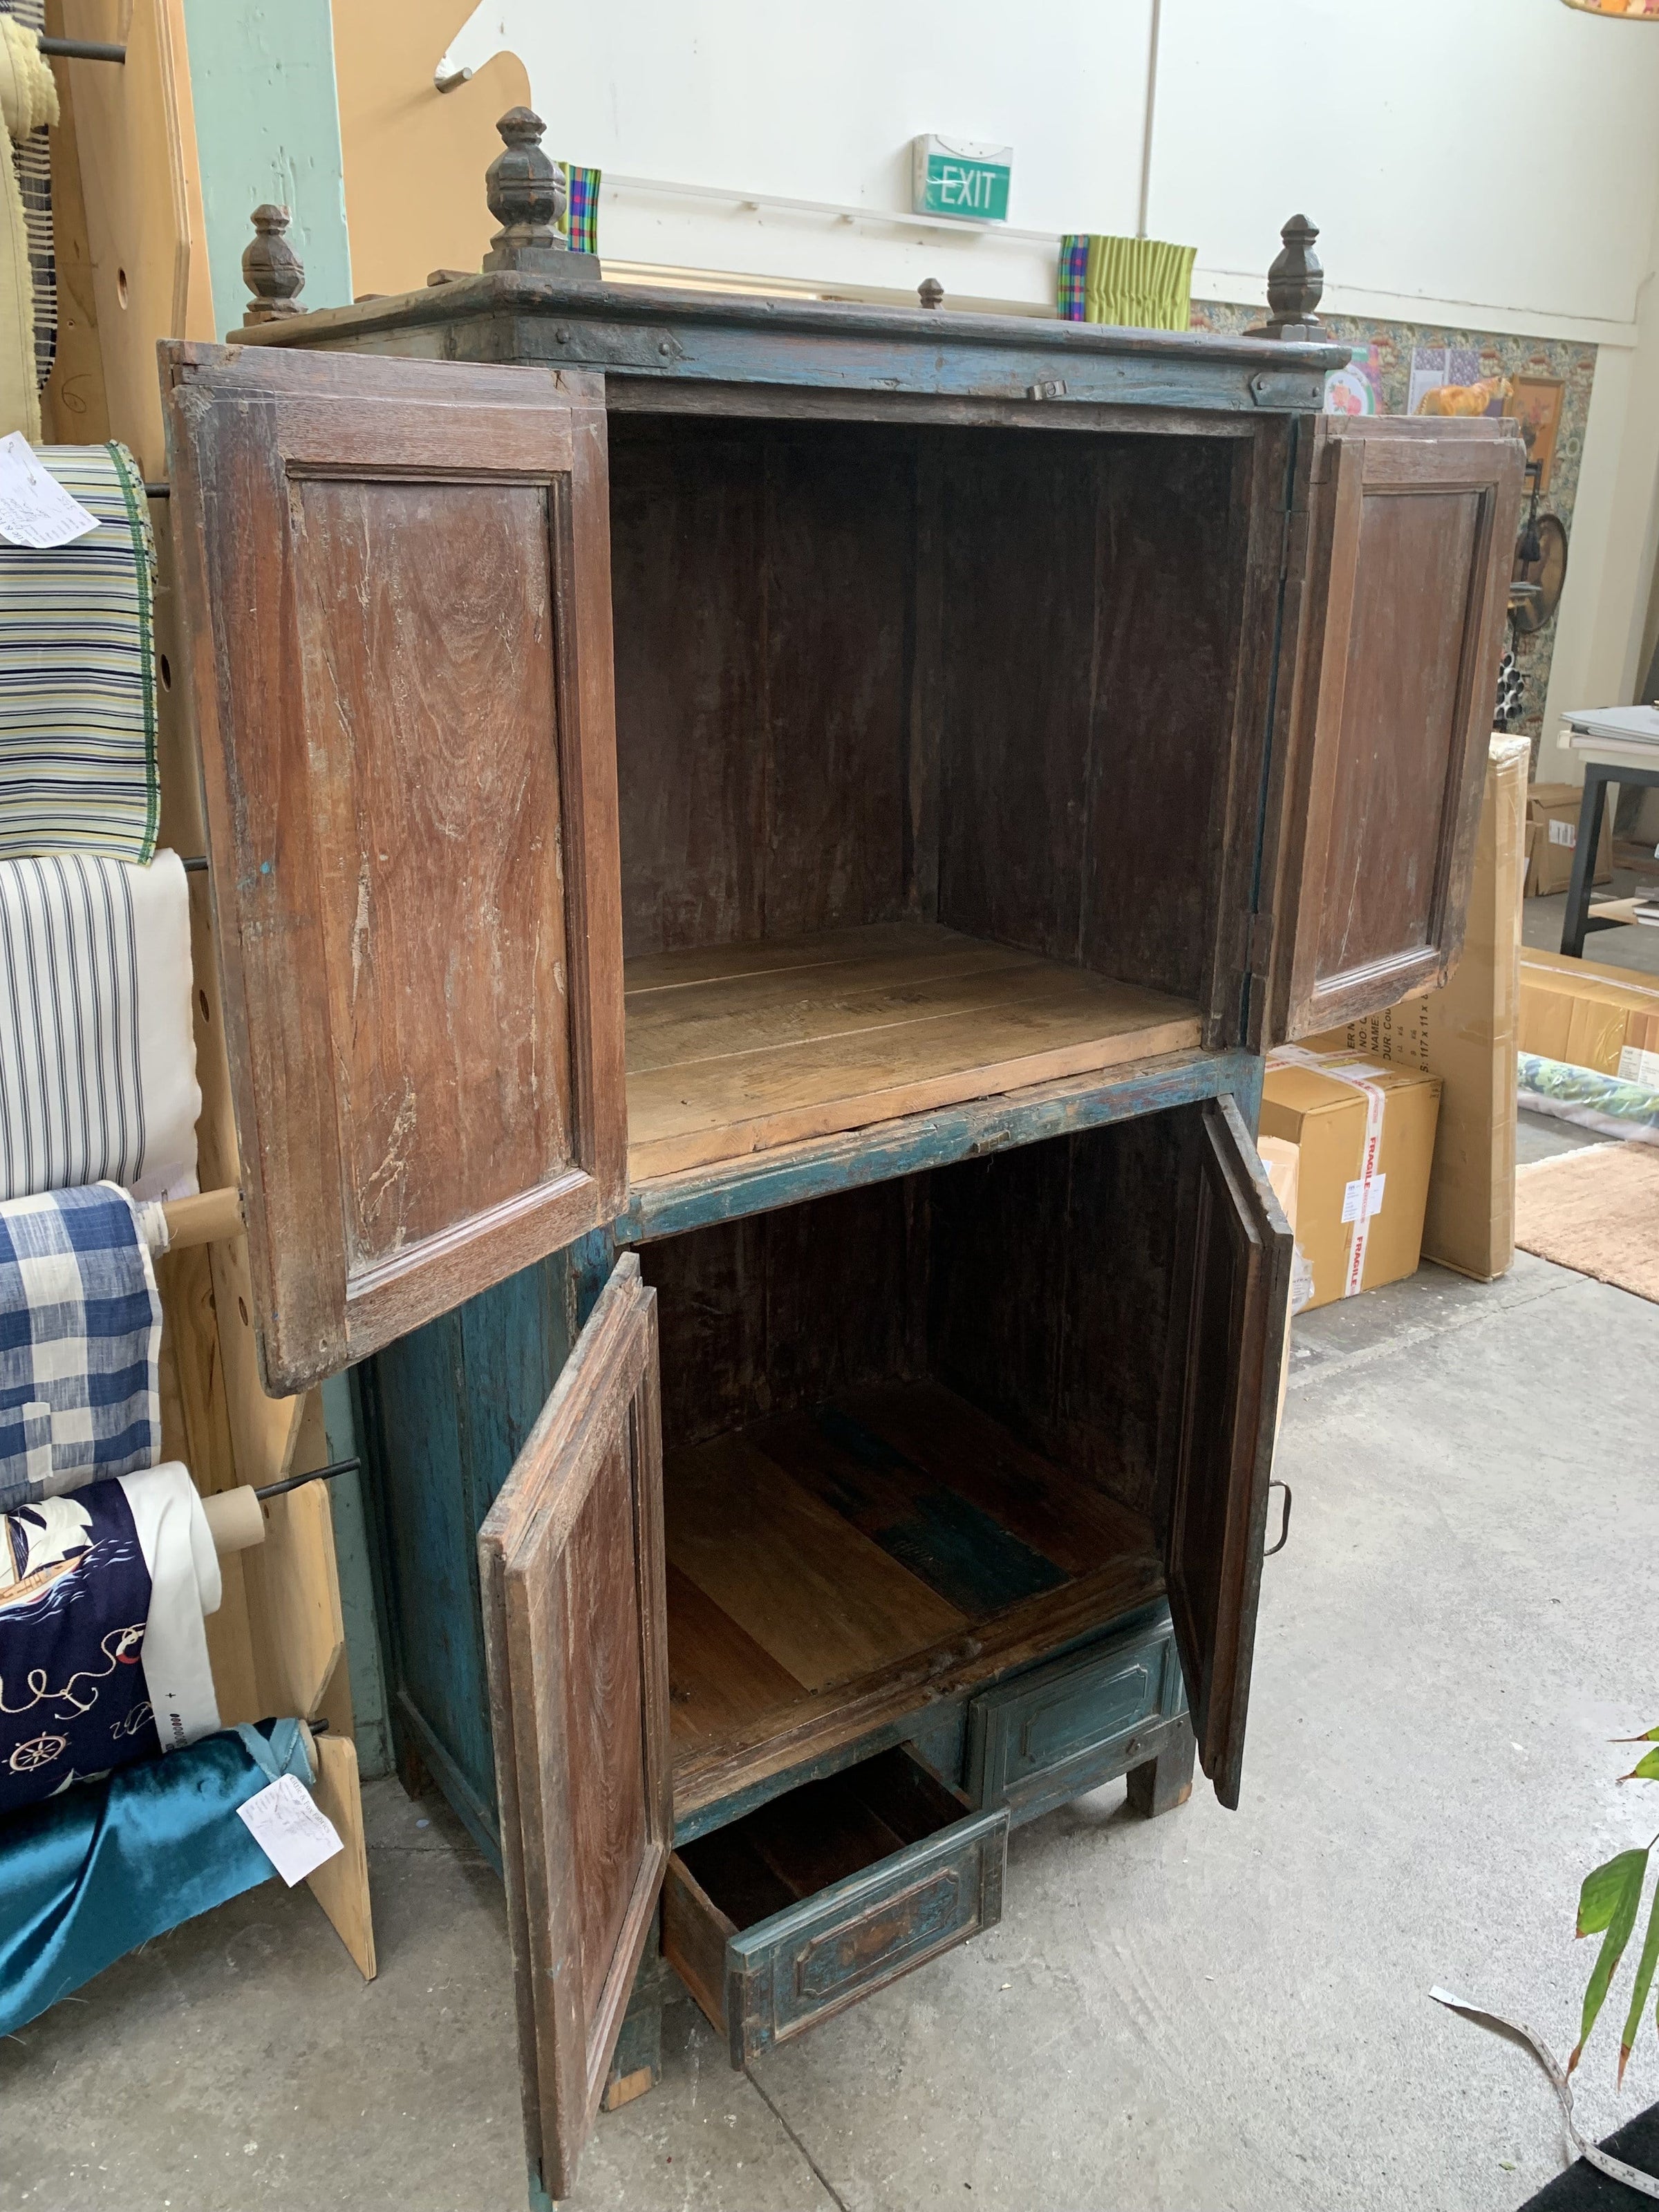 Antique Blue Armoir Cabinet